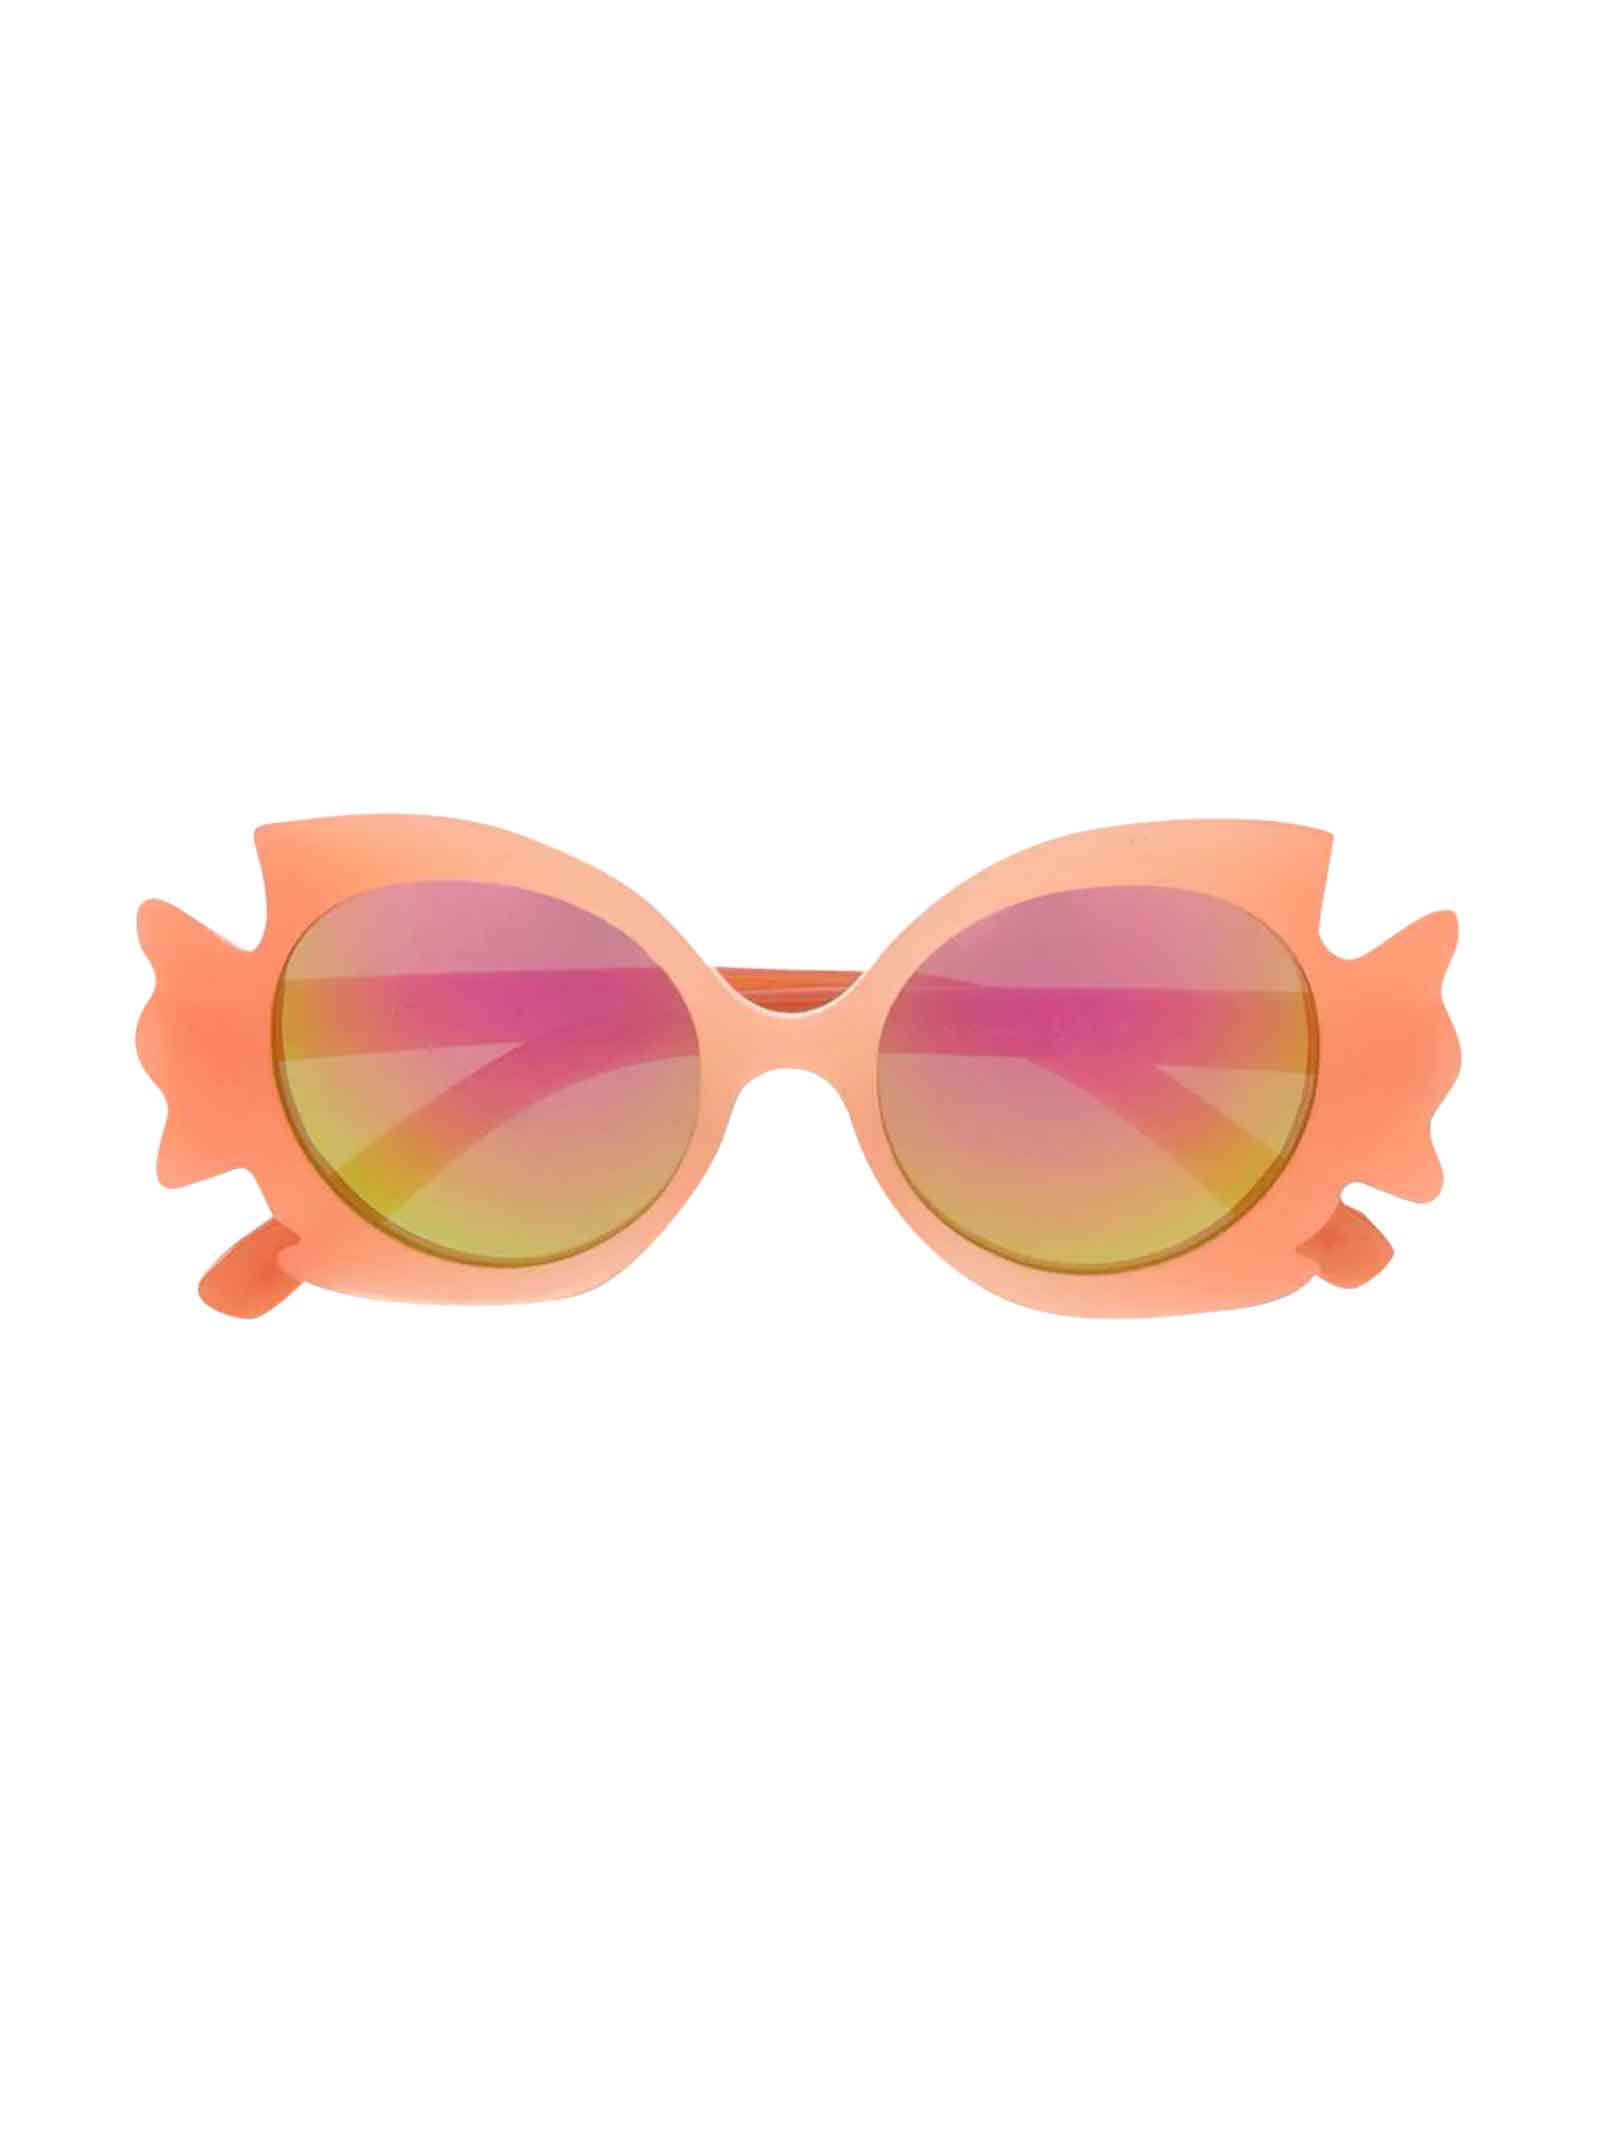 Molo Multicolor Sunglasses Unisex Kids